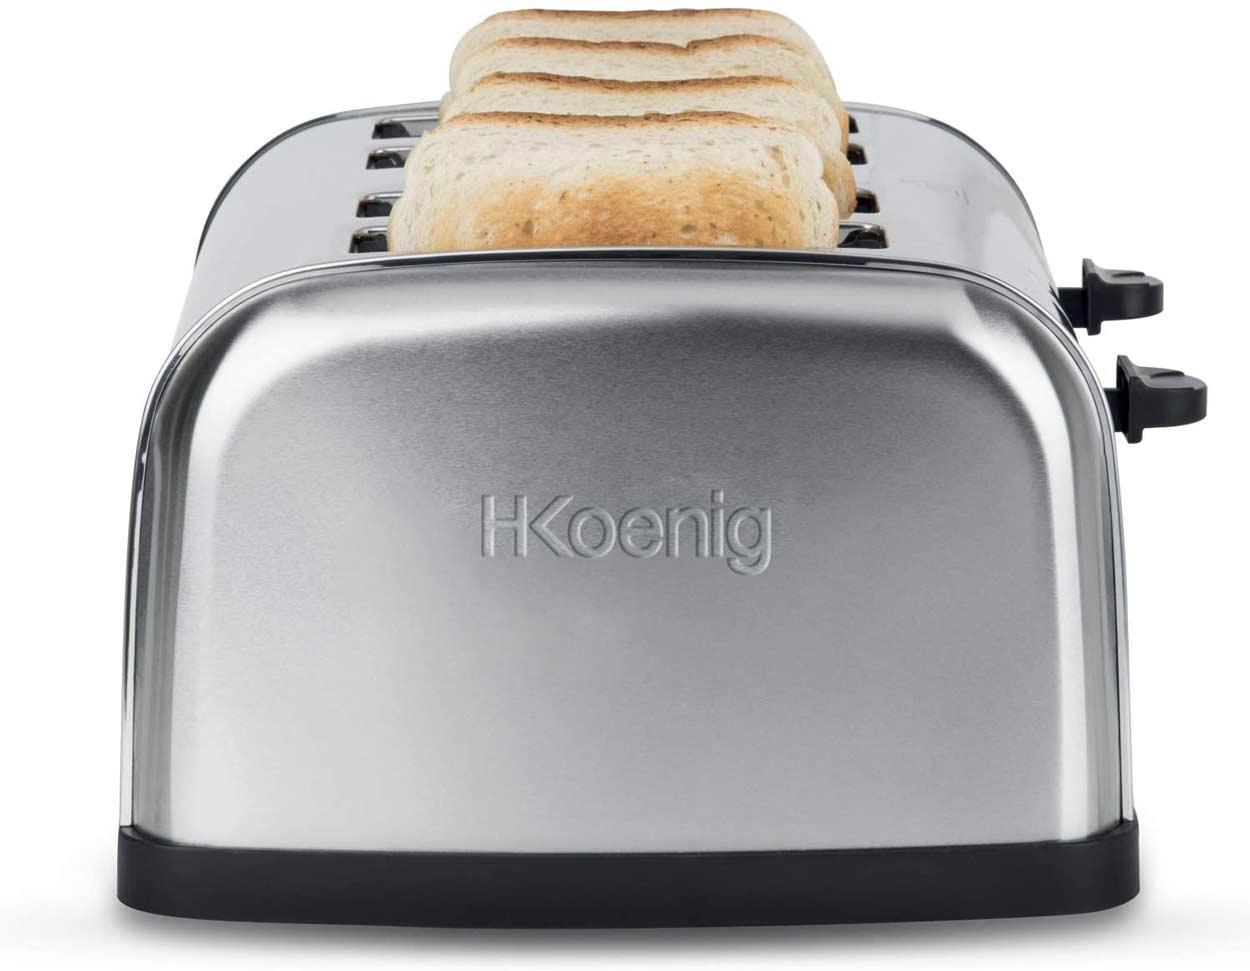 Toaster TOS14 (1500 H.KOENIG Schlitze: Watt, 4) Silber